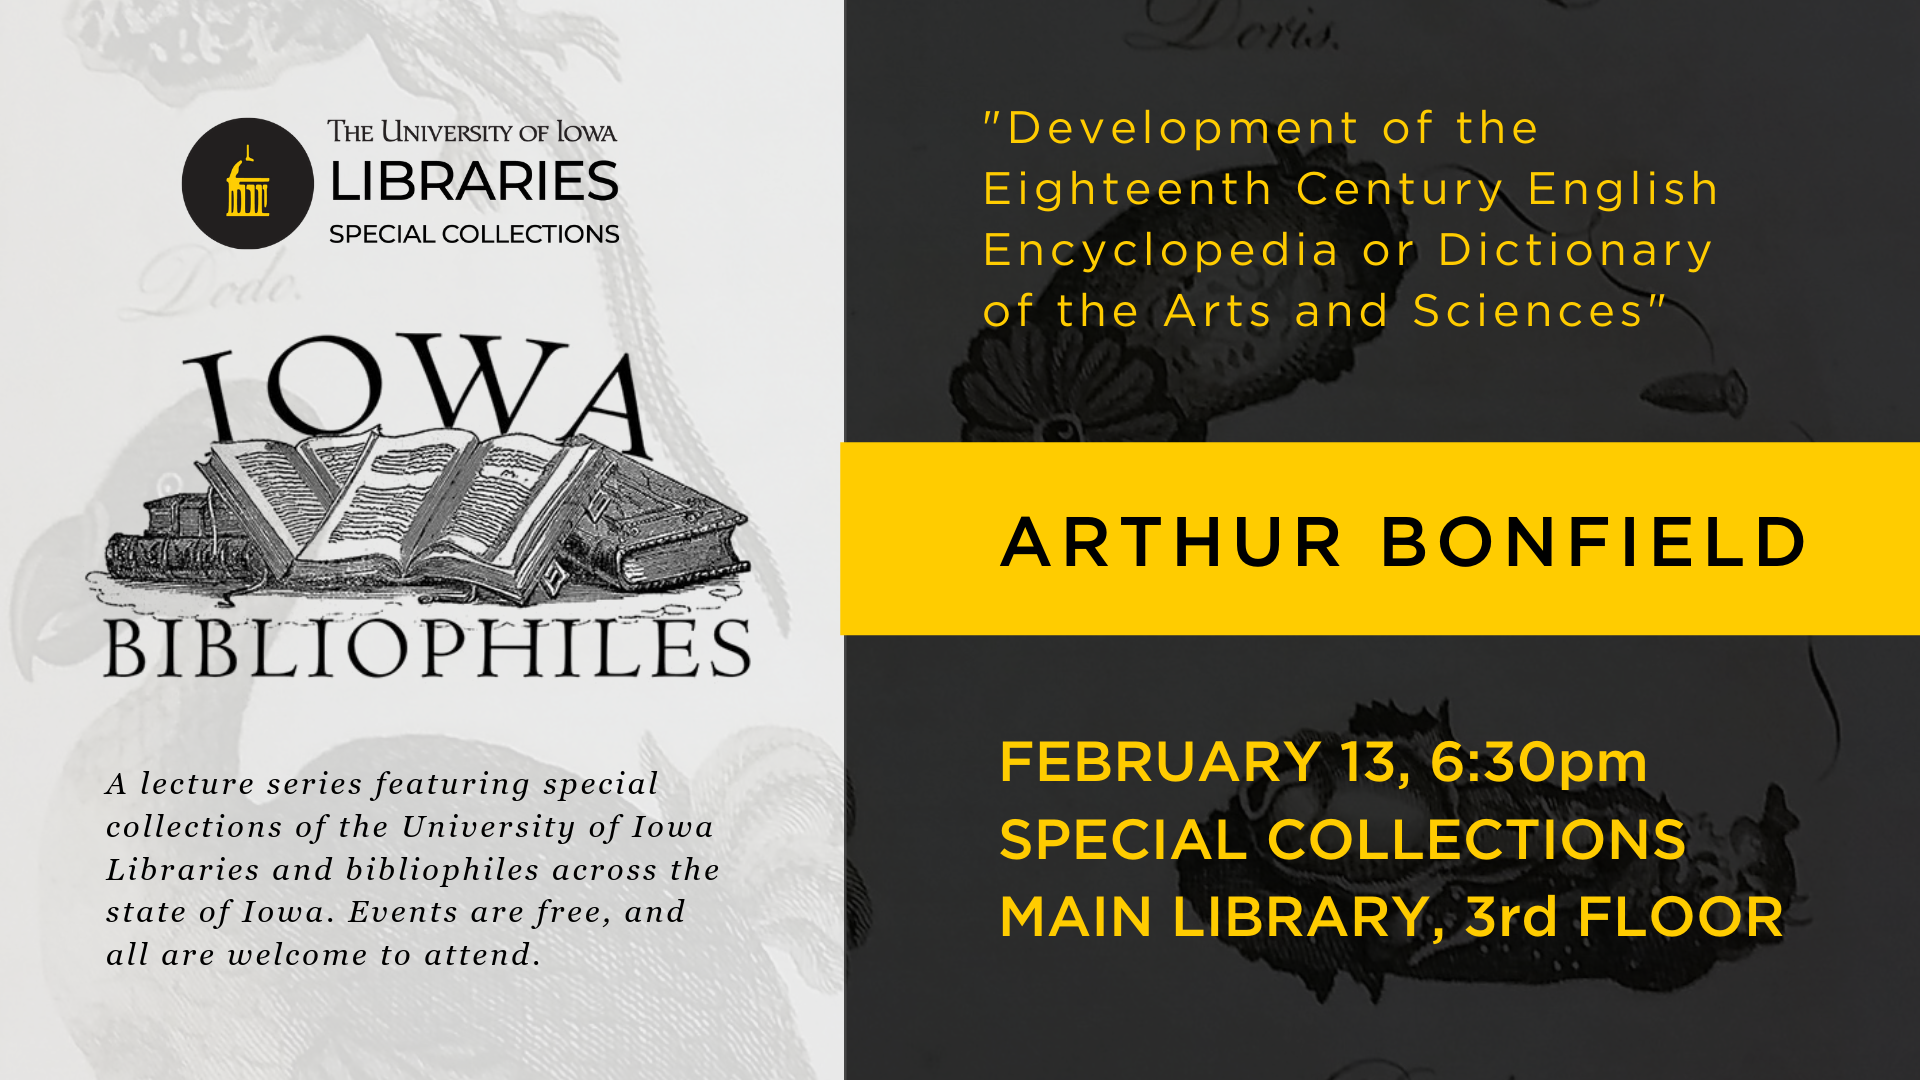 Iowa Bibliophiles Feb 13 6:30 pm